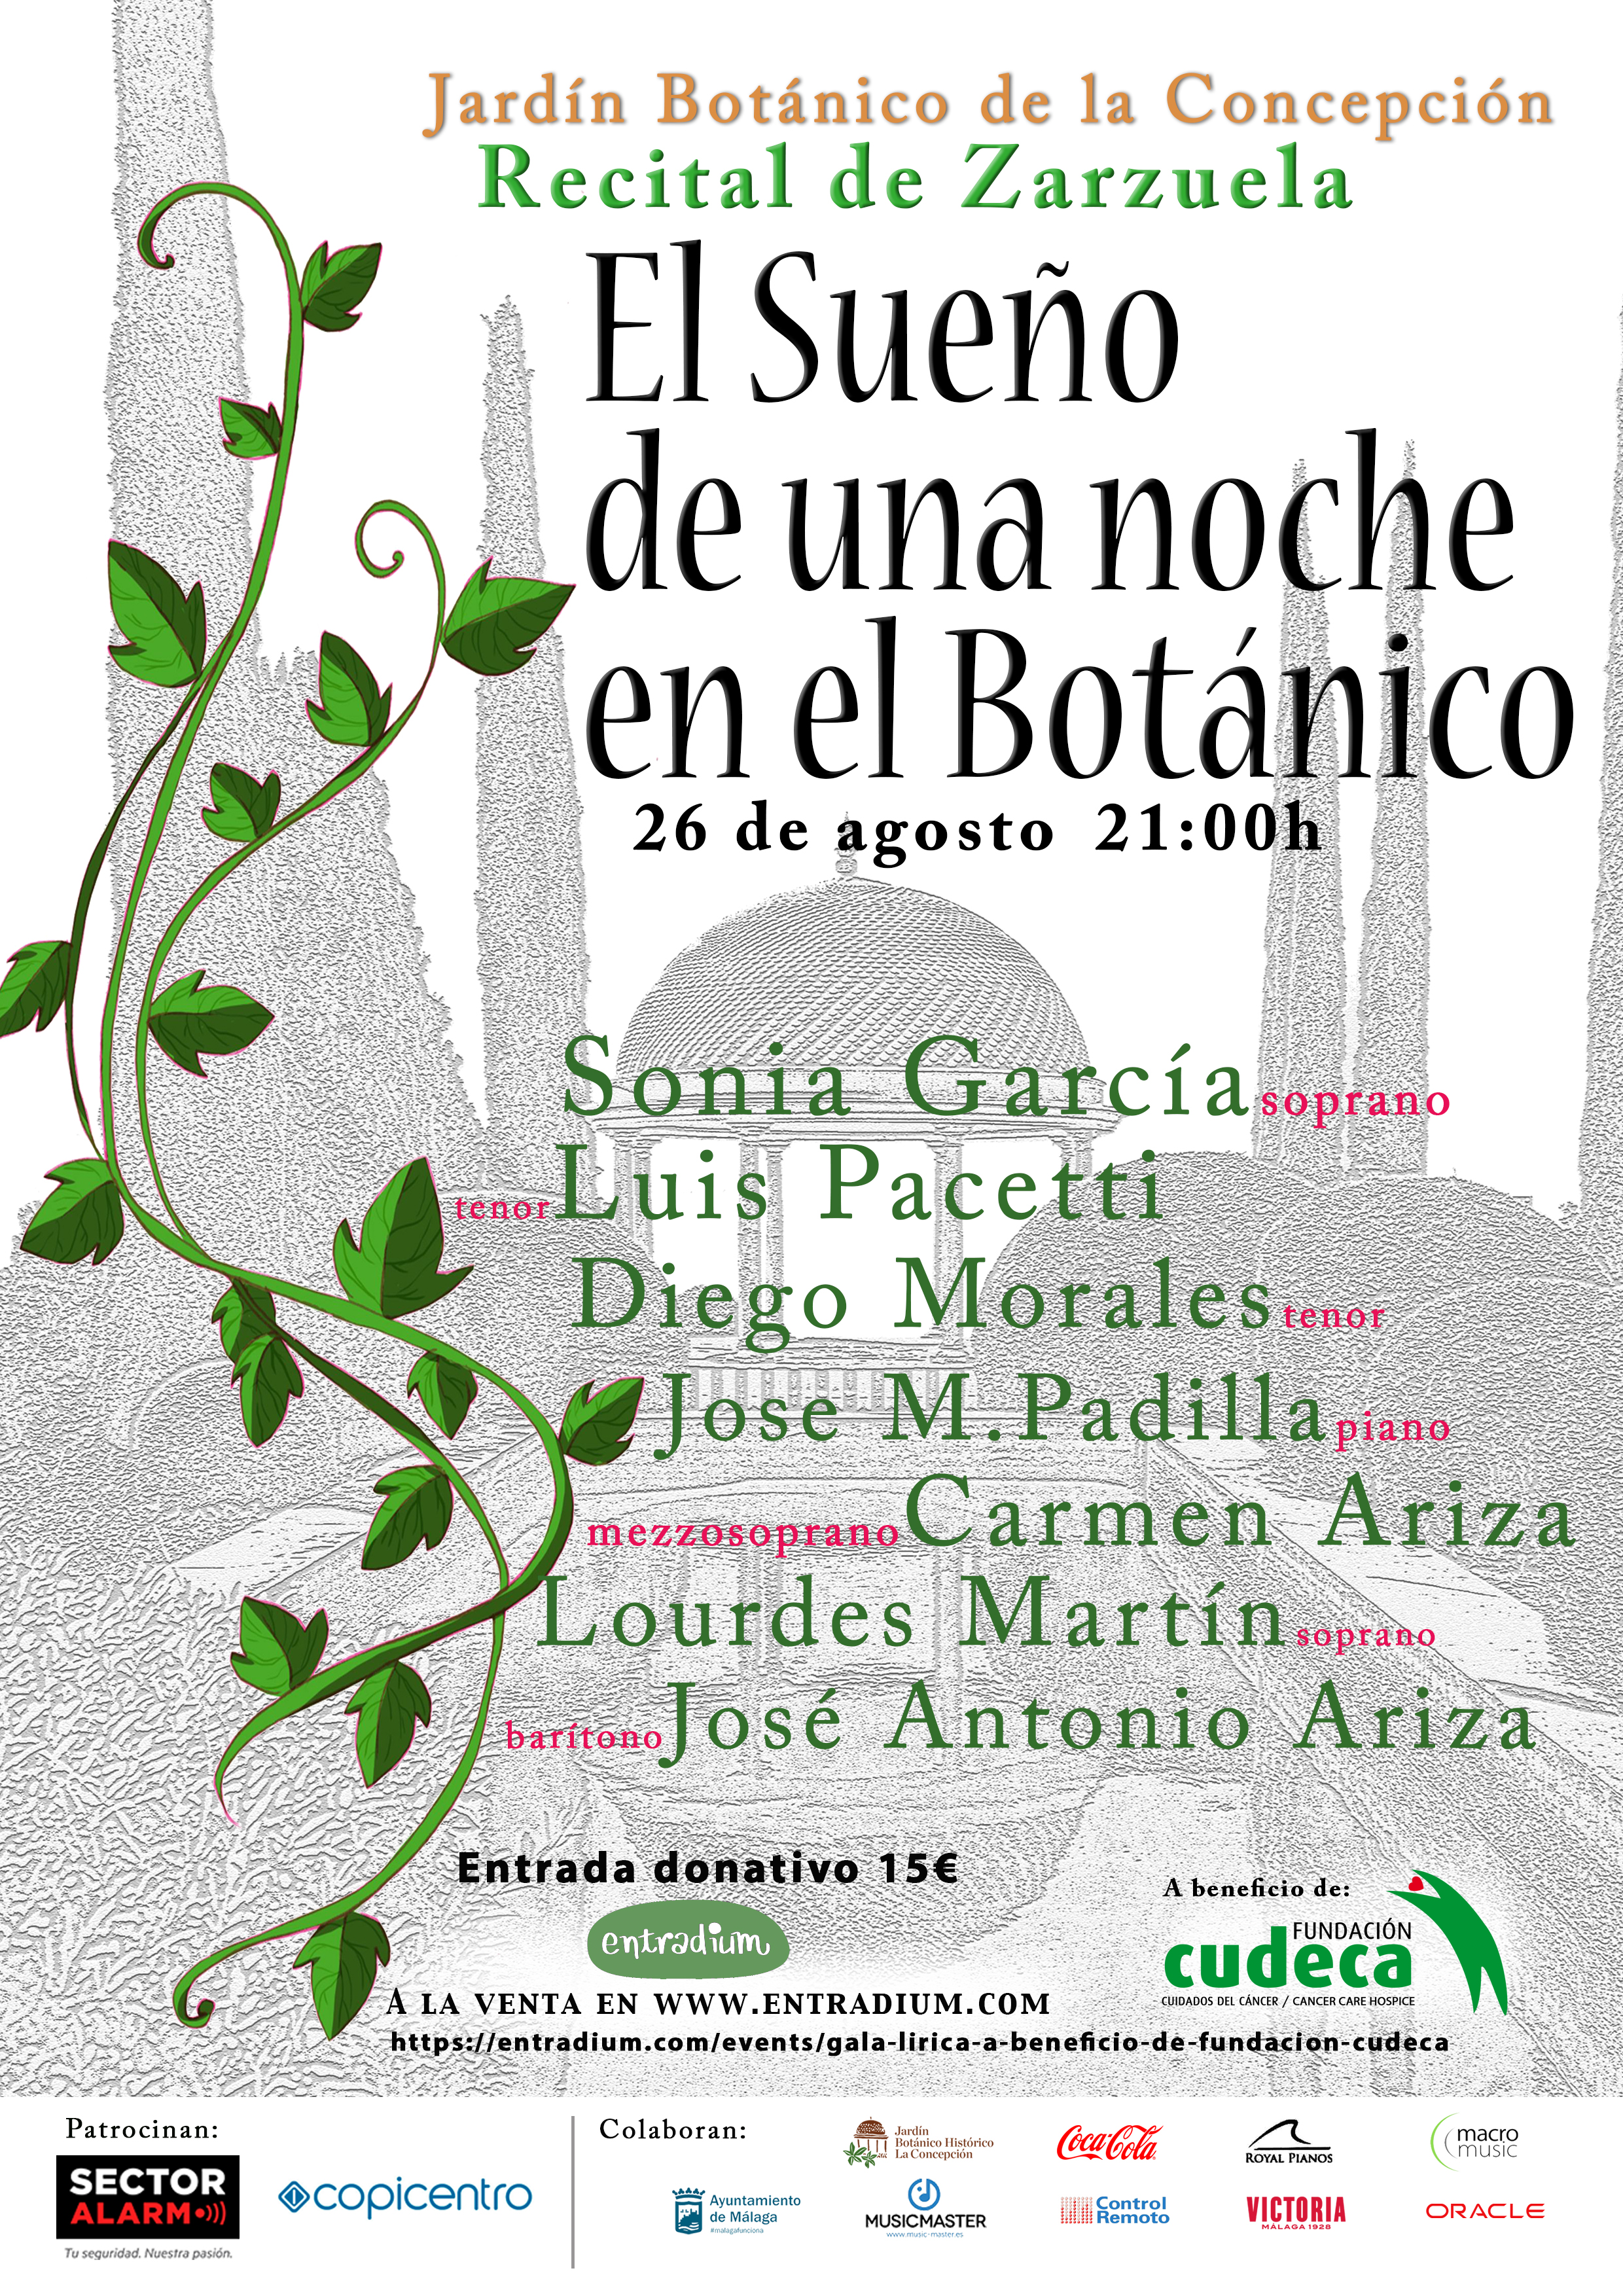 «El sueño de una noche en el Botánico» a beneficio de CUDECA